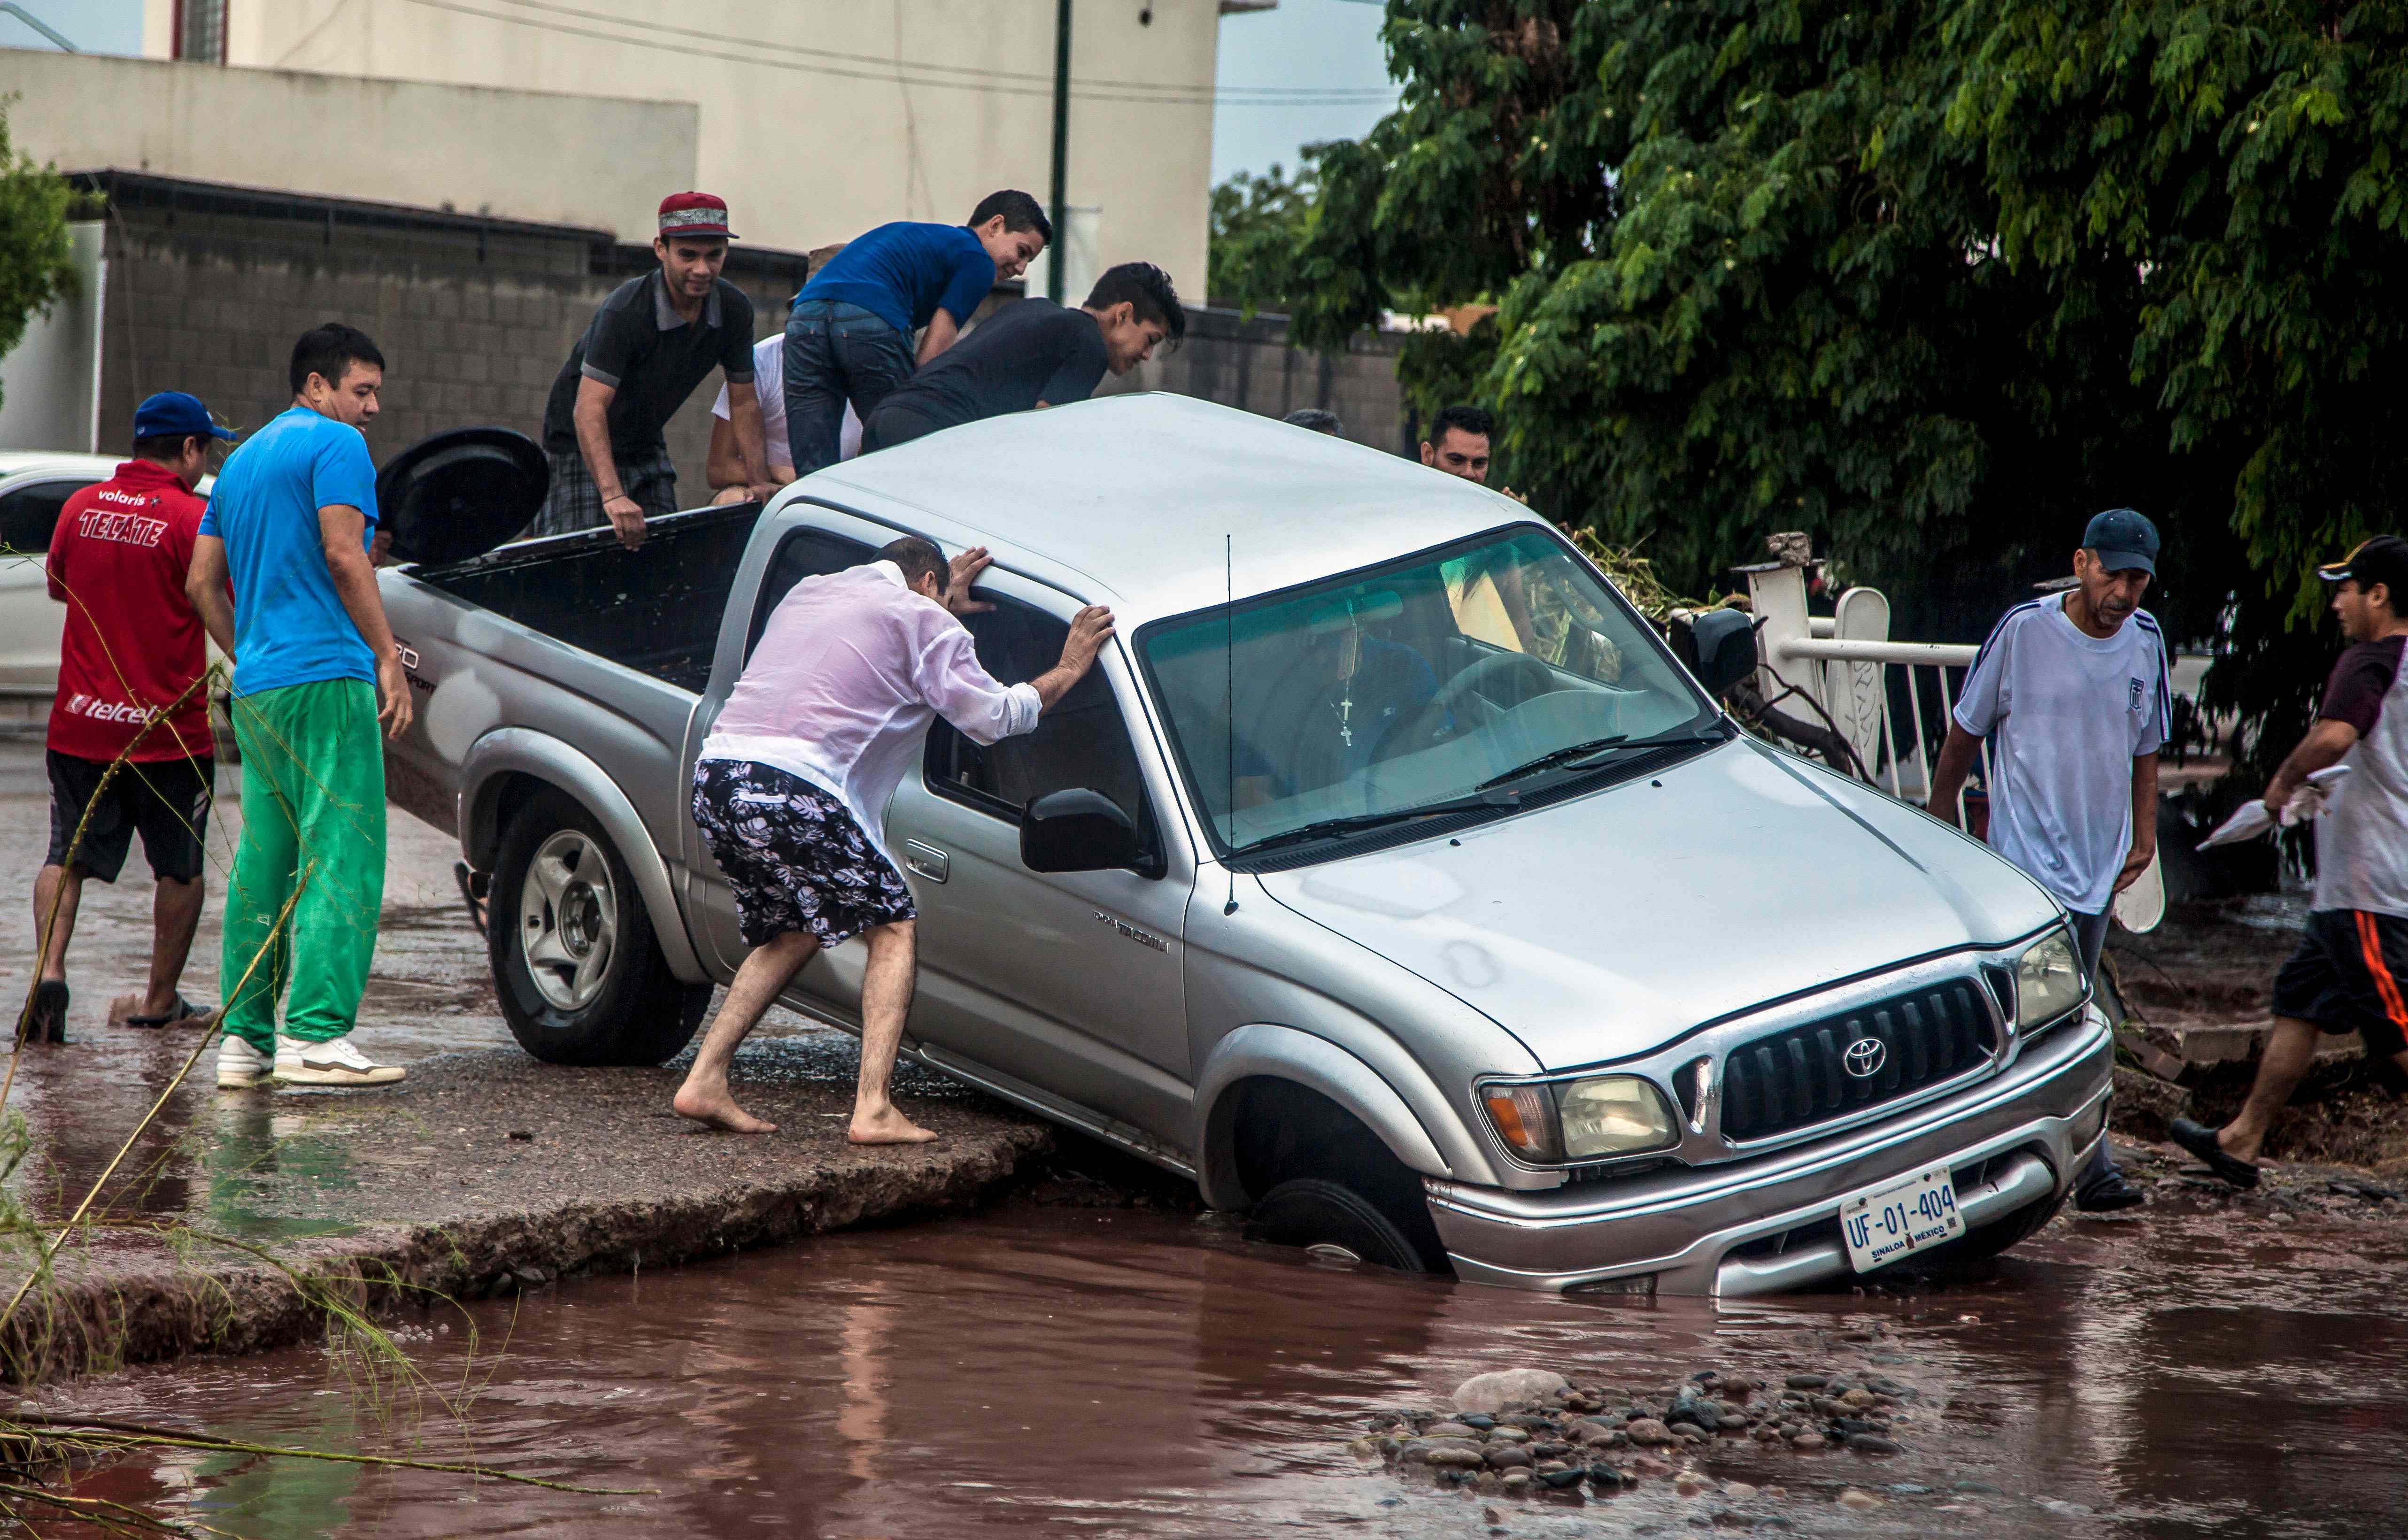  مواطنون مكسيكون يحاولون إنقاذ سيارة من الغرق 